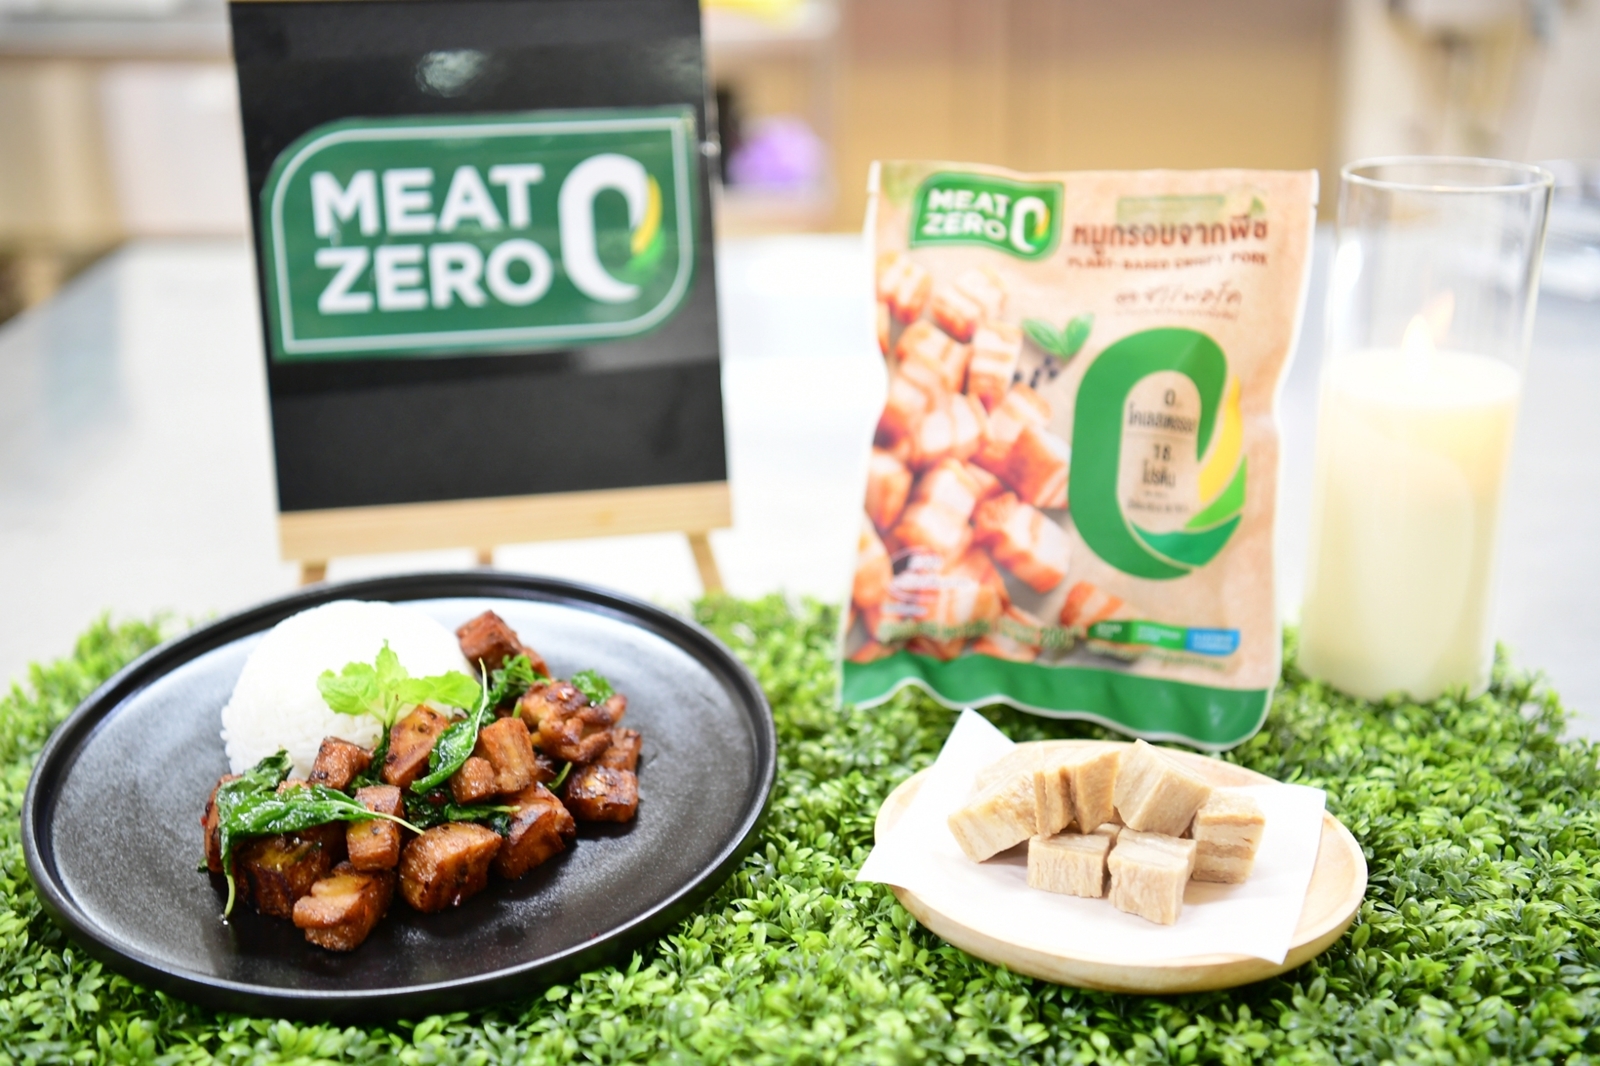 Meat Zero ชูแพลนต์เบส นวัตกรรมอาหารแห่งอนาคต ดีต่อสุขภาพ รับความต้องการช่วงเทศกาลกินเจ